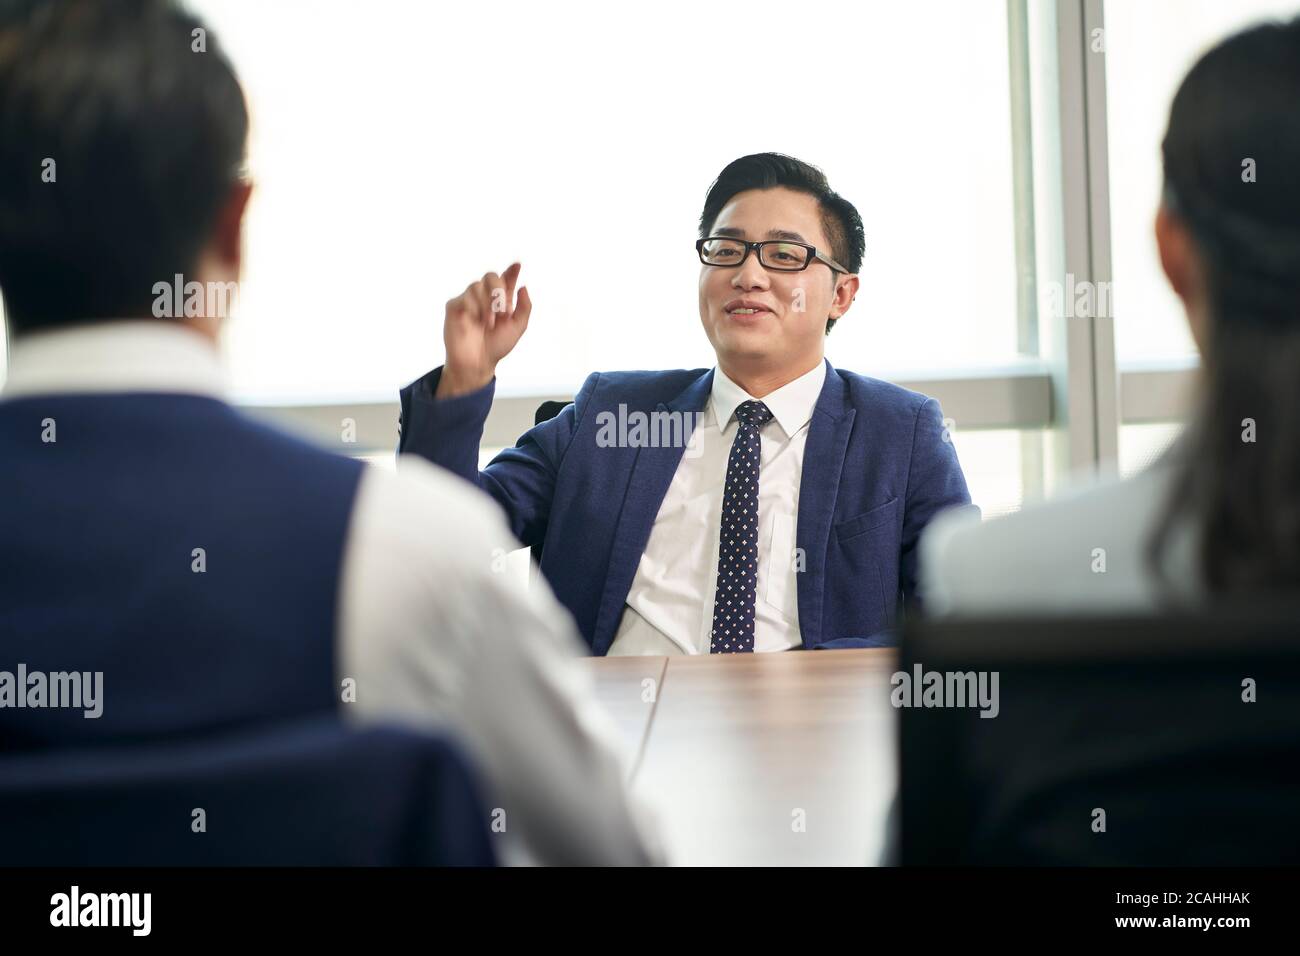 Junge asiatische Business Person im Gespräch groß vor hr Interviewer während Job-Interview Stockfoto